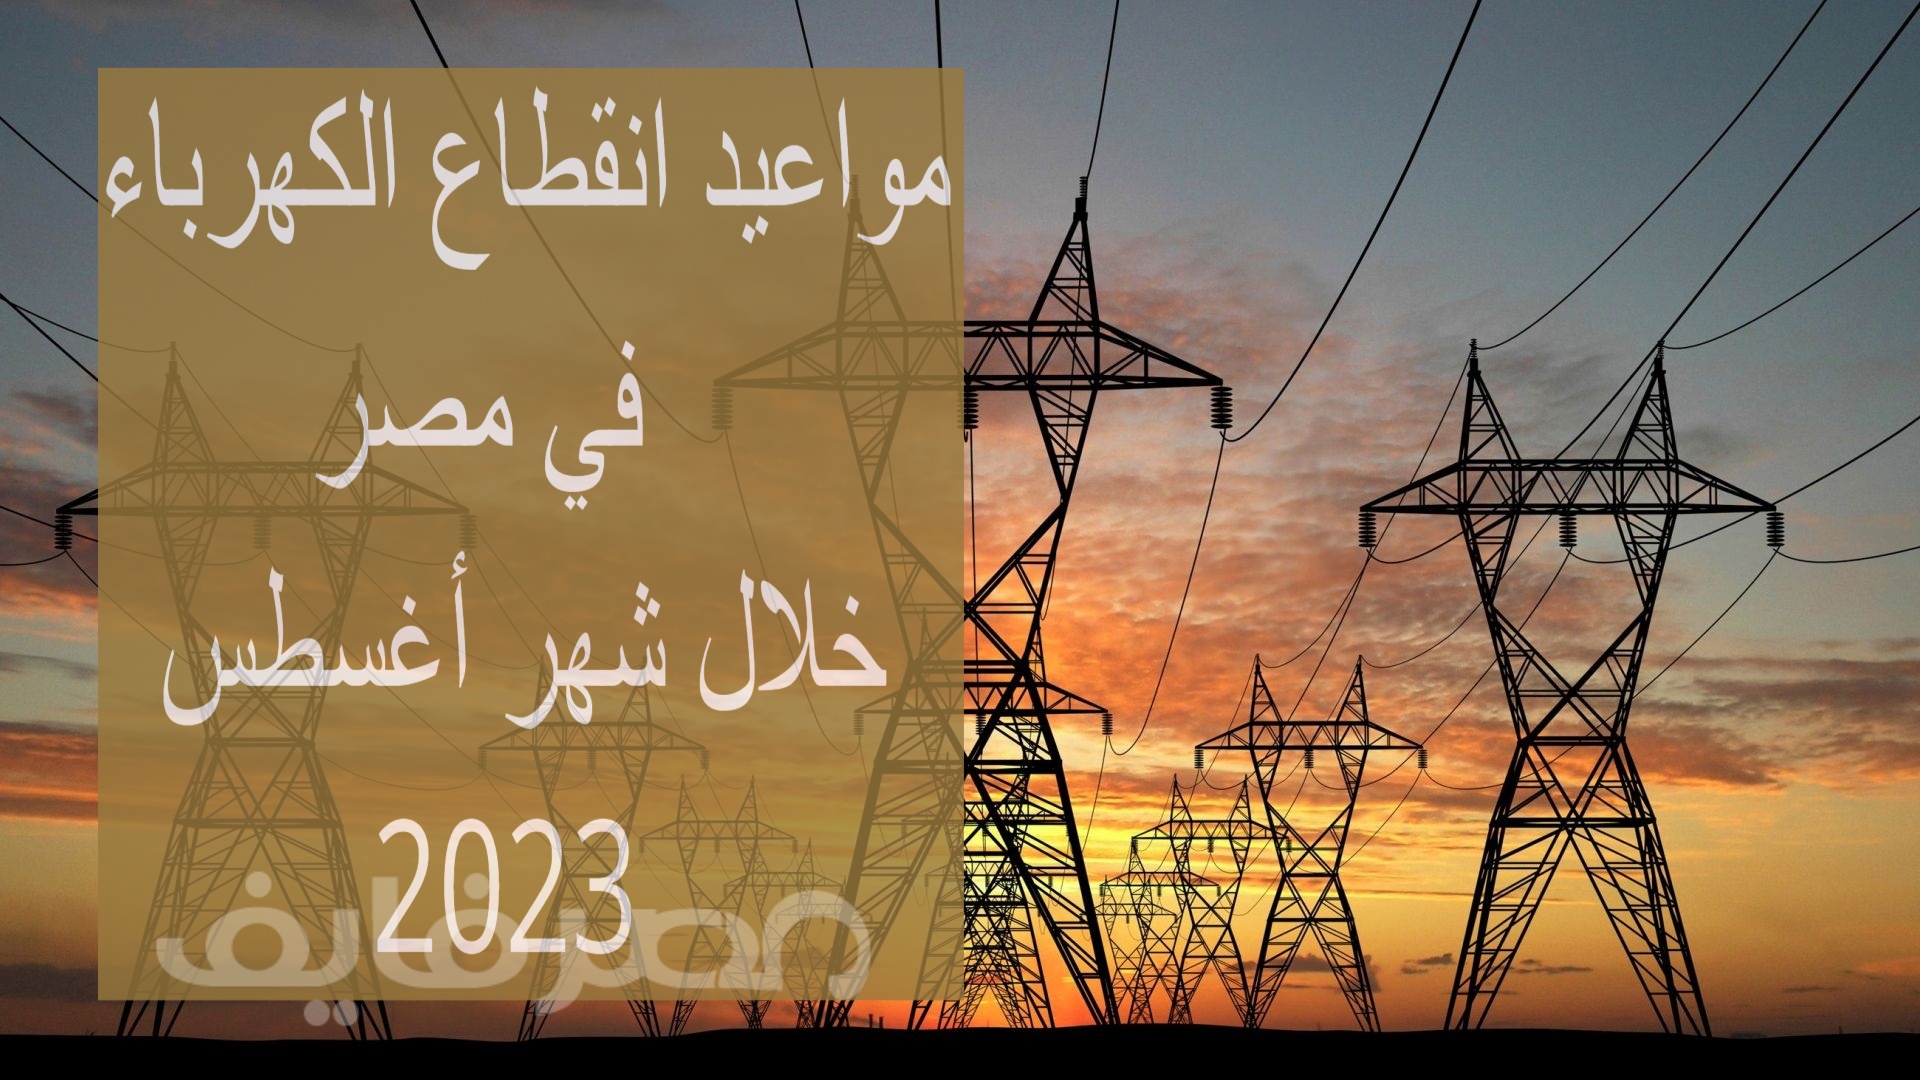 خطة تخفيف الأحمال.. تعرف على المواعيد الرسمية لانقطاع الكهرباء في مصر خلال شهر أغسطس 2023 – البوكس نيوز